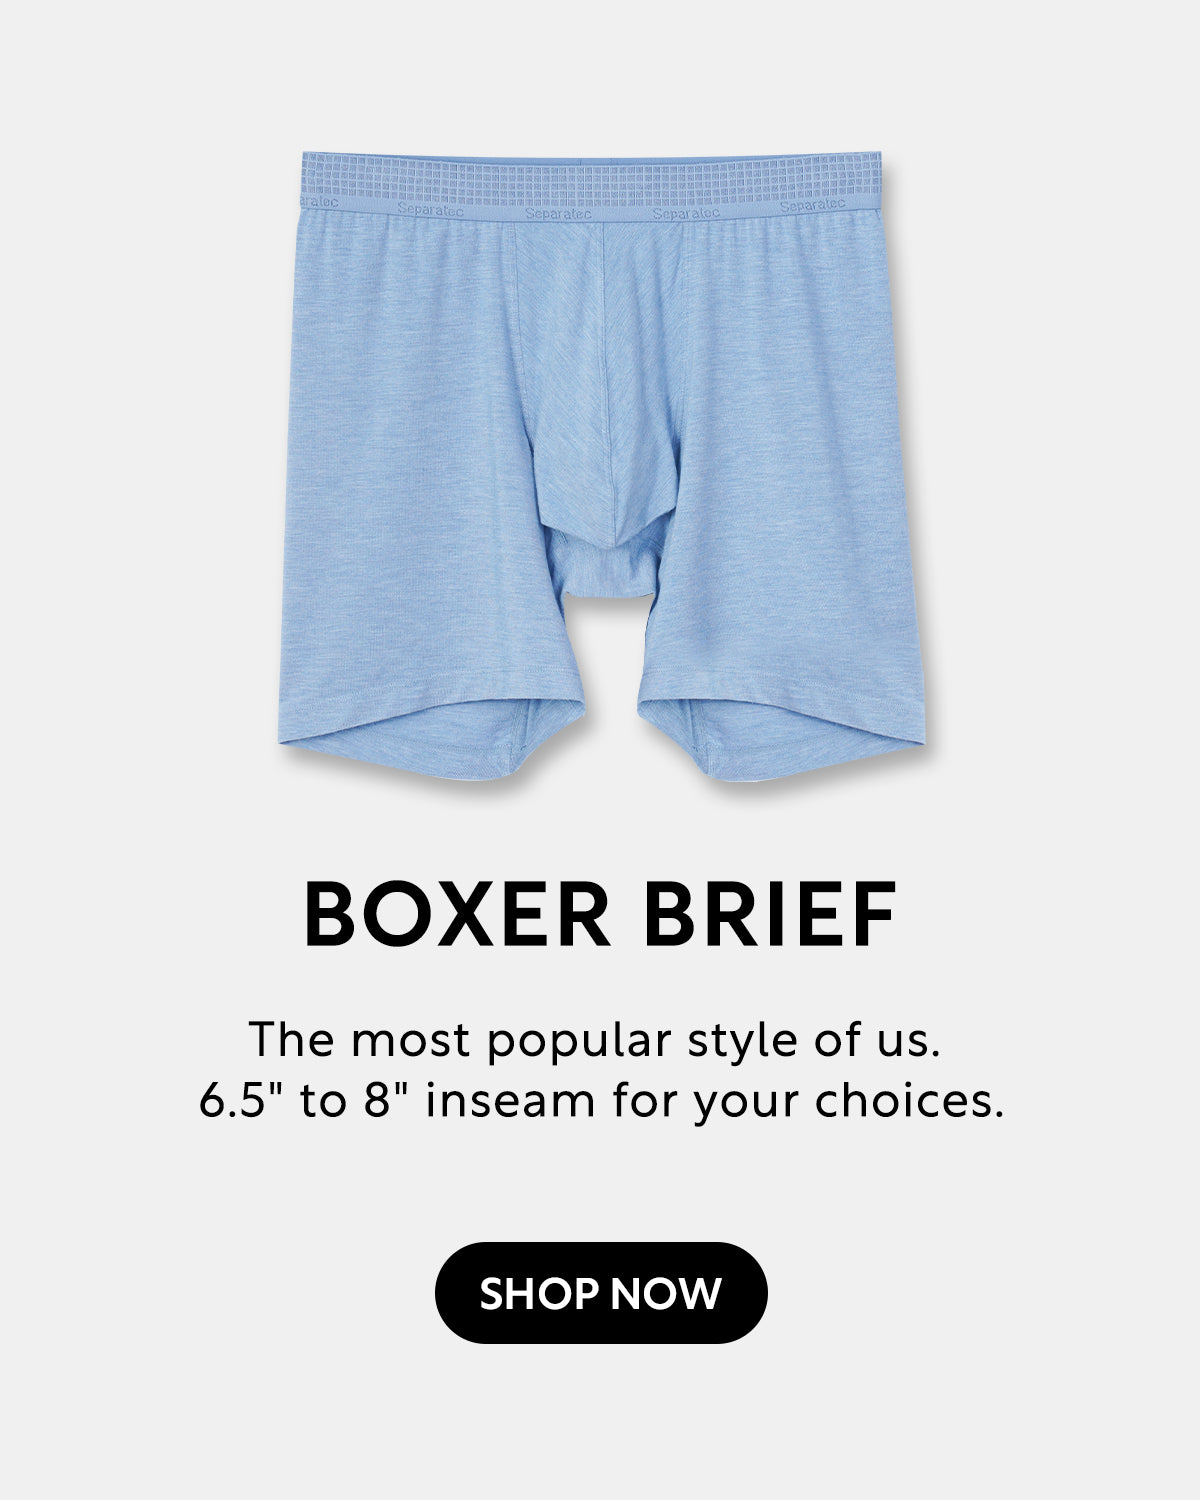 Separatec Dual Pouch Underwear丨Revolution In Men's Underwear